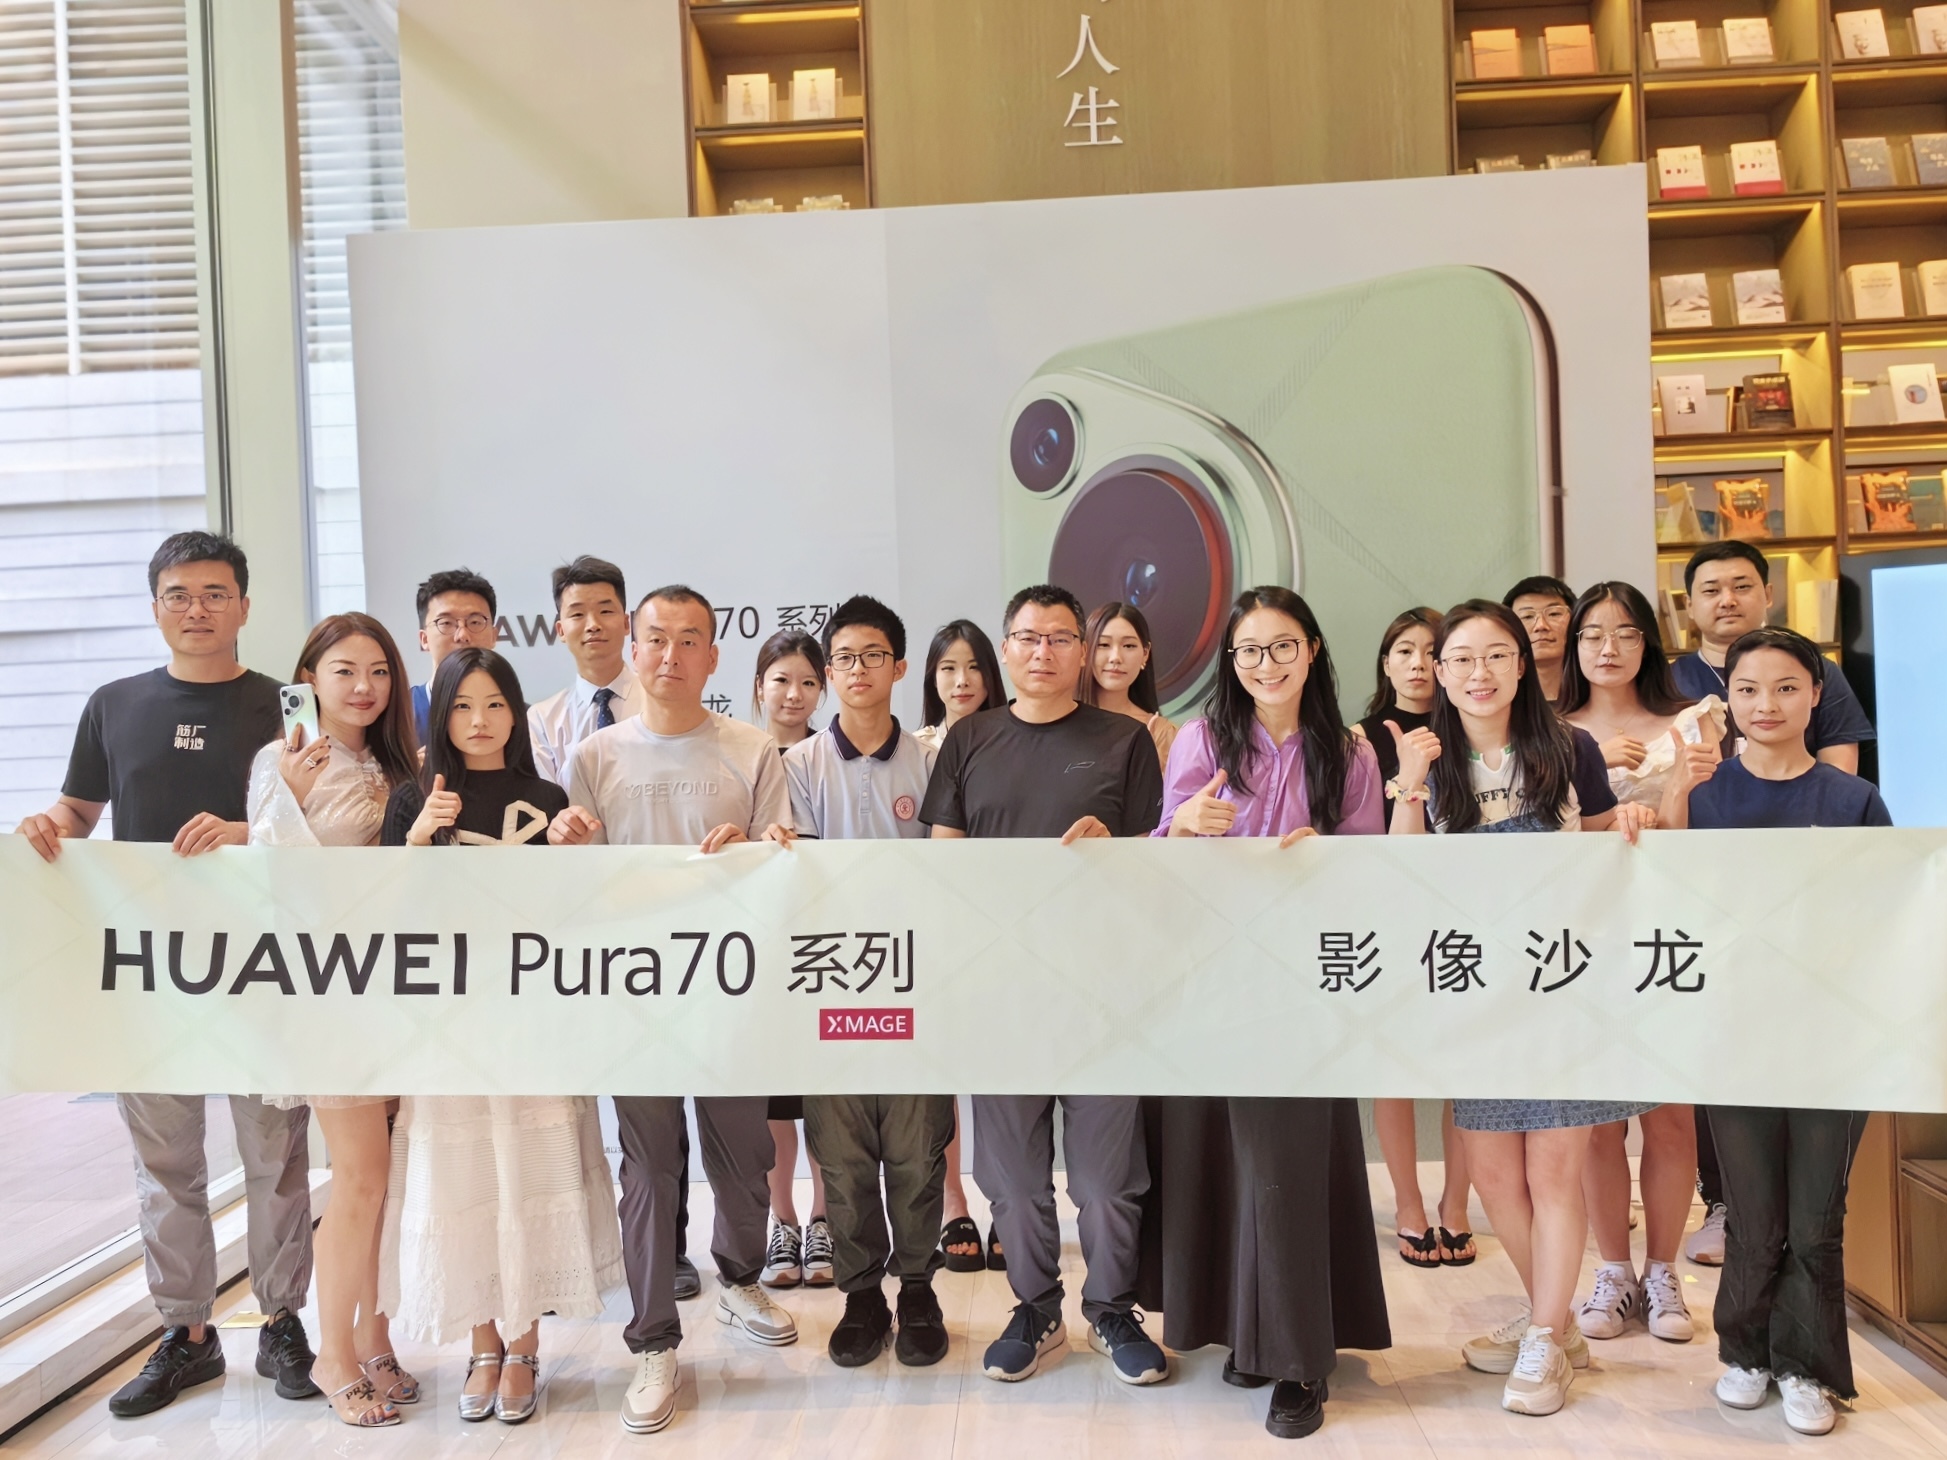 HUAWEI Pura70 系列“锐意风向·影像沙龙”品鉴会现场